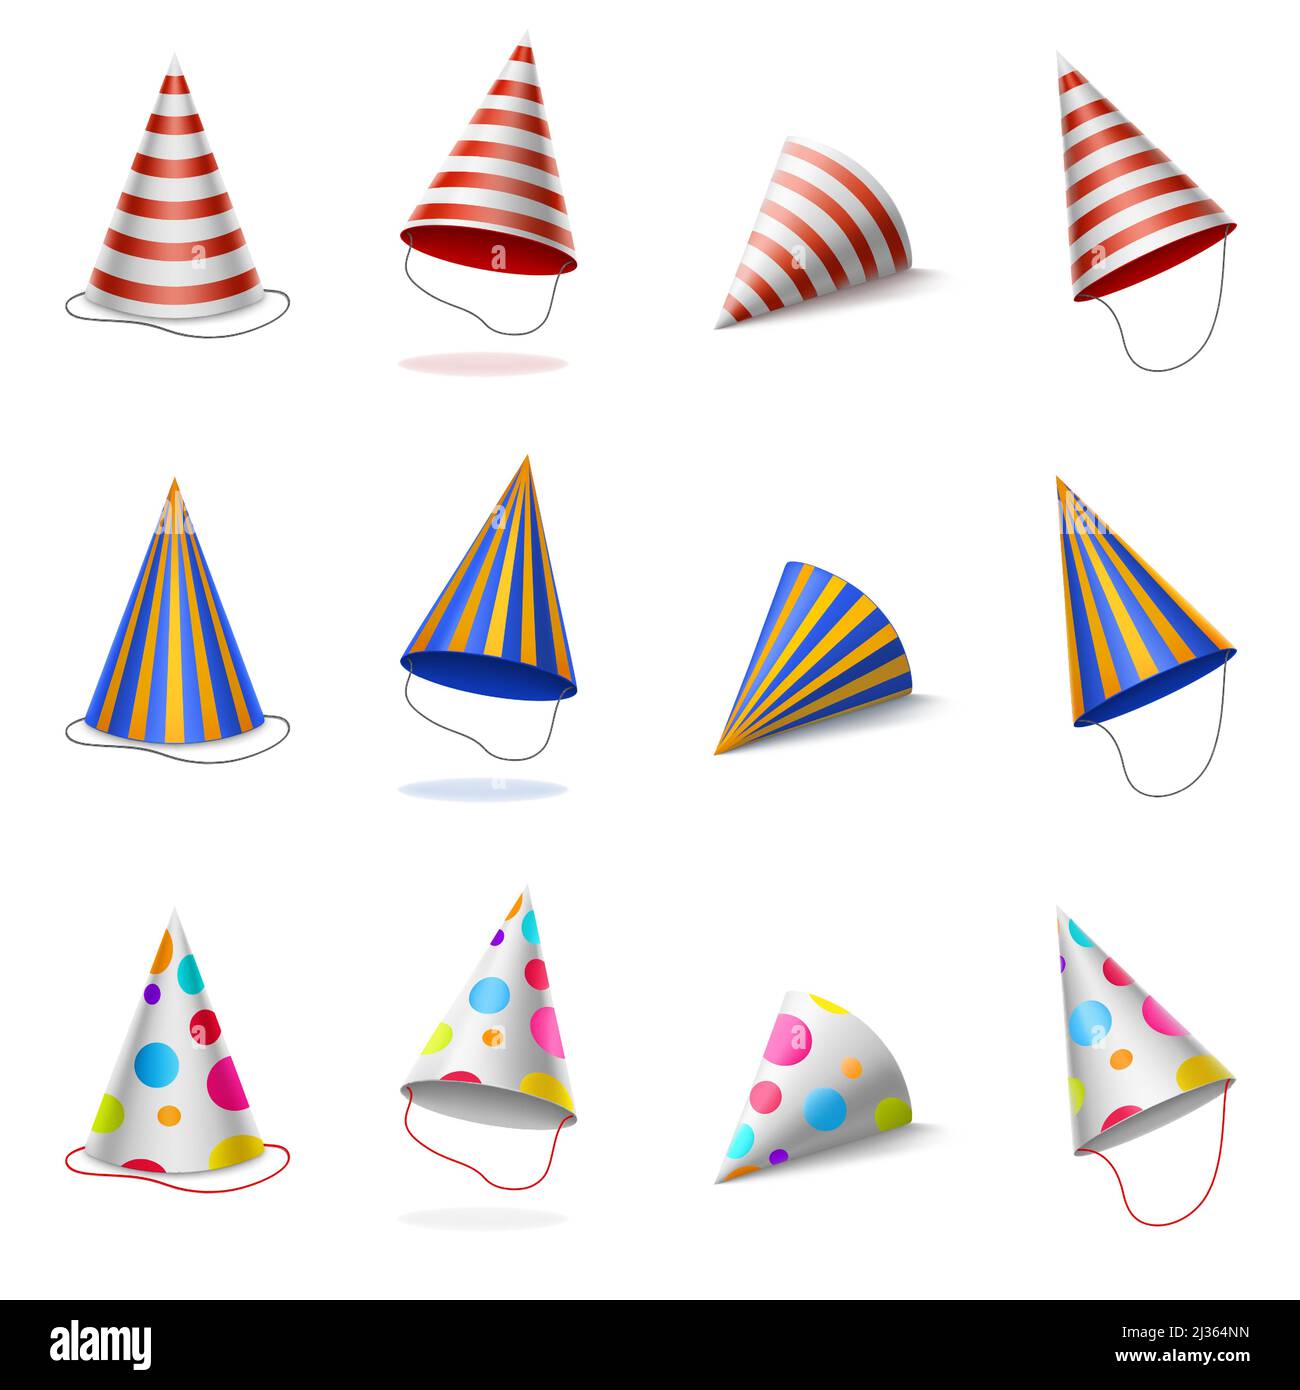 Chapeaux de fête, casquettes colorées d'anniversaire avec rayures et motif à pois, cônes en carton pour fête d'anniversaire ou de fête d'anniversaire isolés sur fond blanc, Illustration de Vecteur